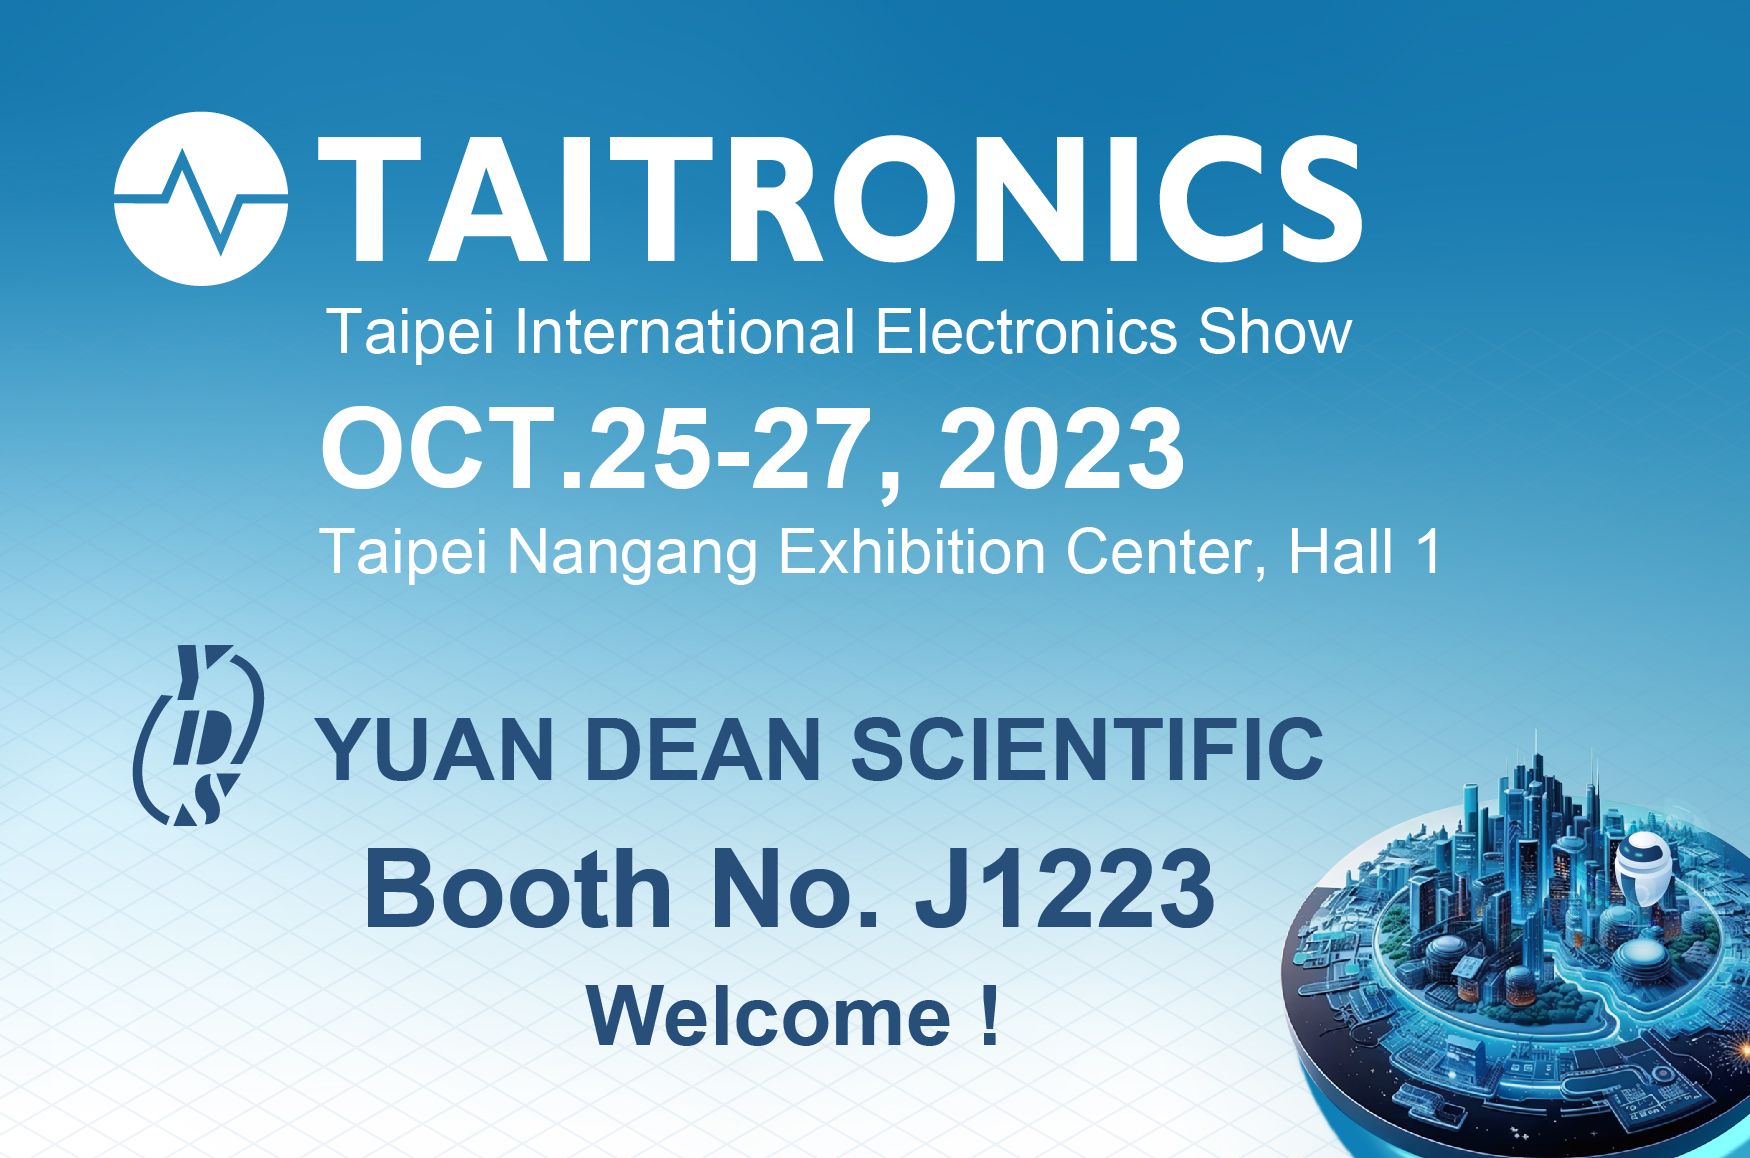 2023 TAITRONICS-benvenuti a visitare lo stand di YUAN DEAN- J1223